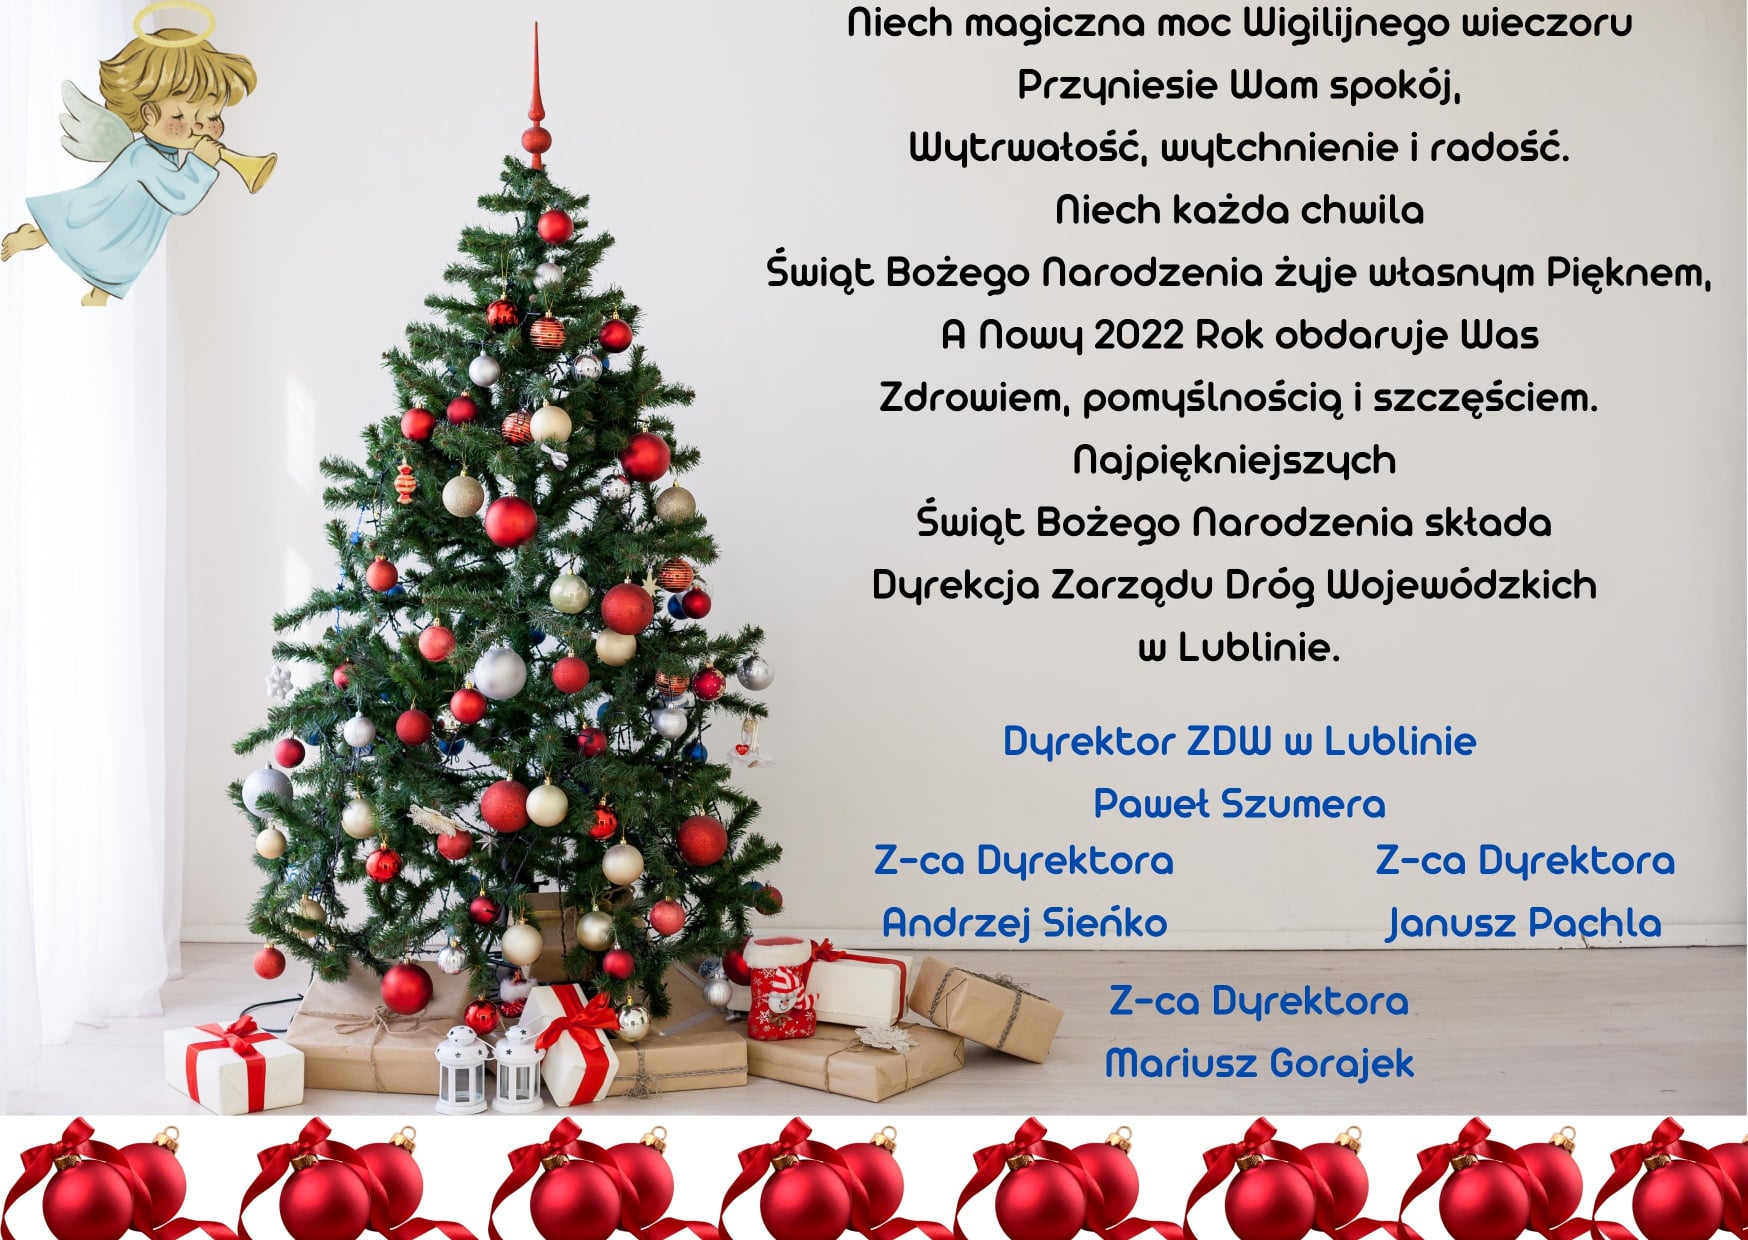 Kartka przedstawia przyozdobioną w srebrne i czerwone bombki oraz kokardki choinkę pod którą znajdują się prezenty. Obok znajdują się życzenia z okazji Świąt Bożego Narodzenia od dyrekcji Zarządu Dróg Wojewódzkich w Lublinie